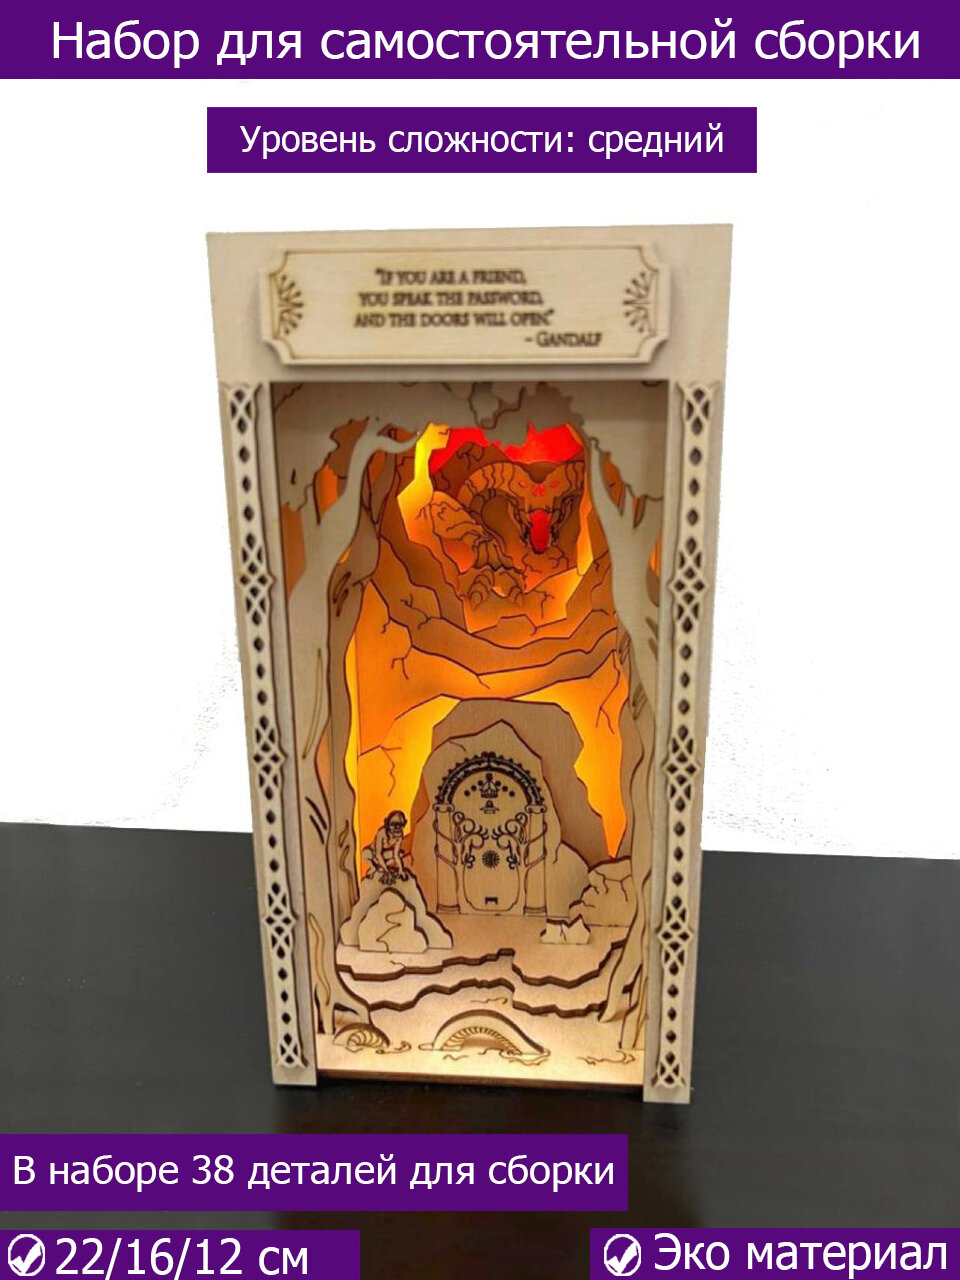 Декоративная подставка Властелин колец, BOOK NOOK, ограничитель для книг с подсветкой, ночник